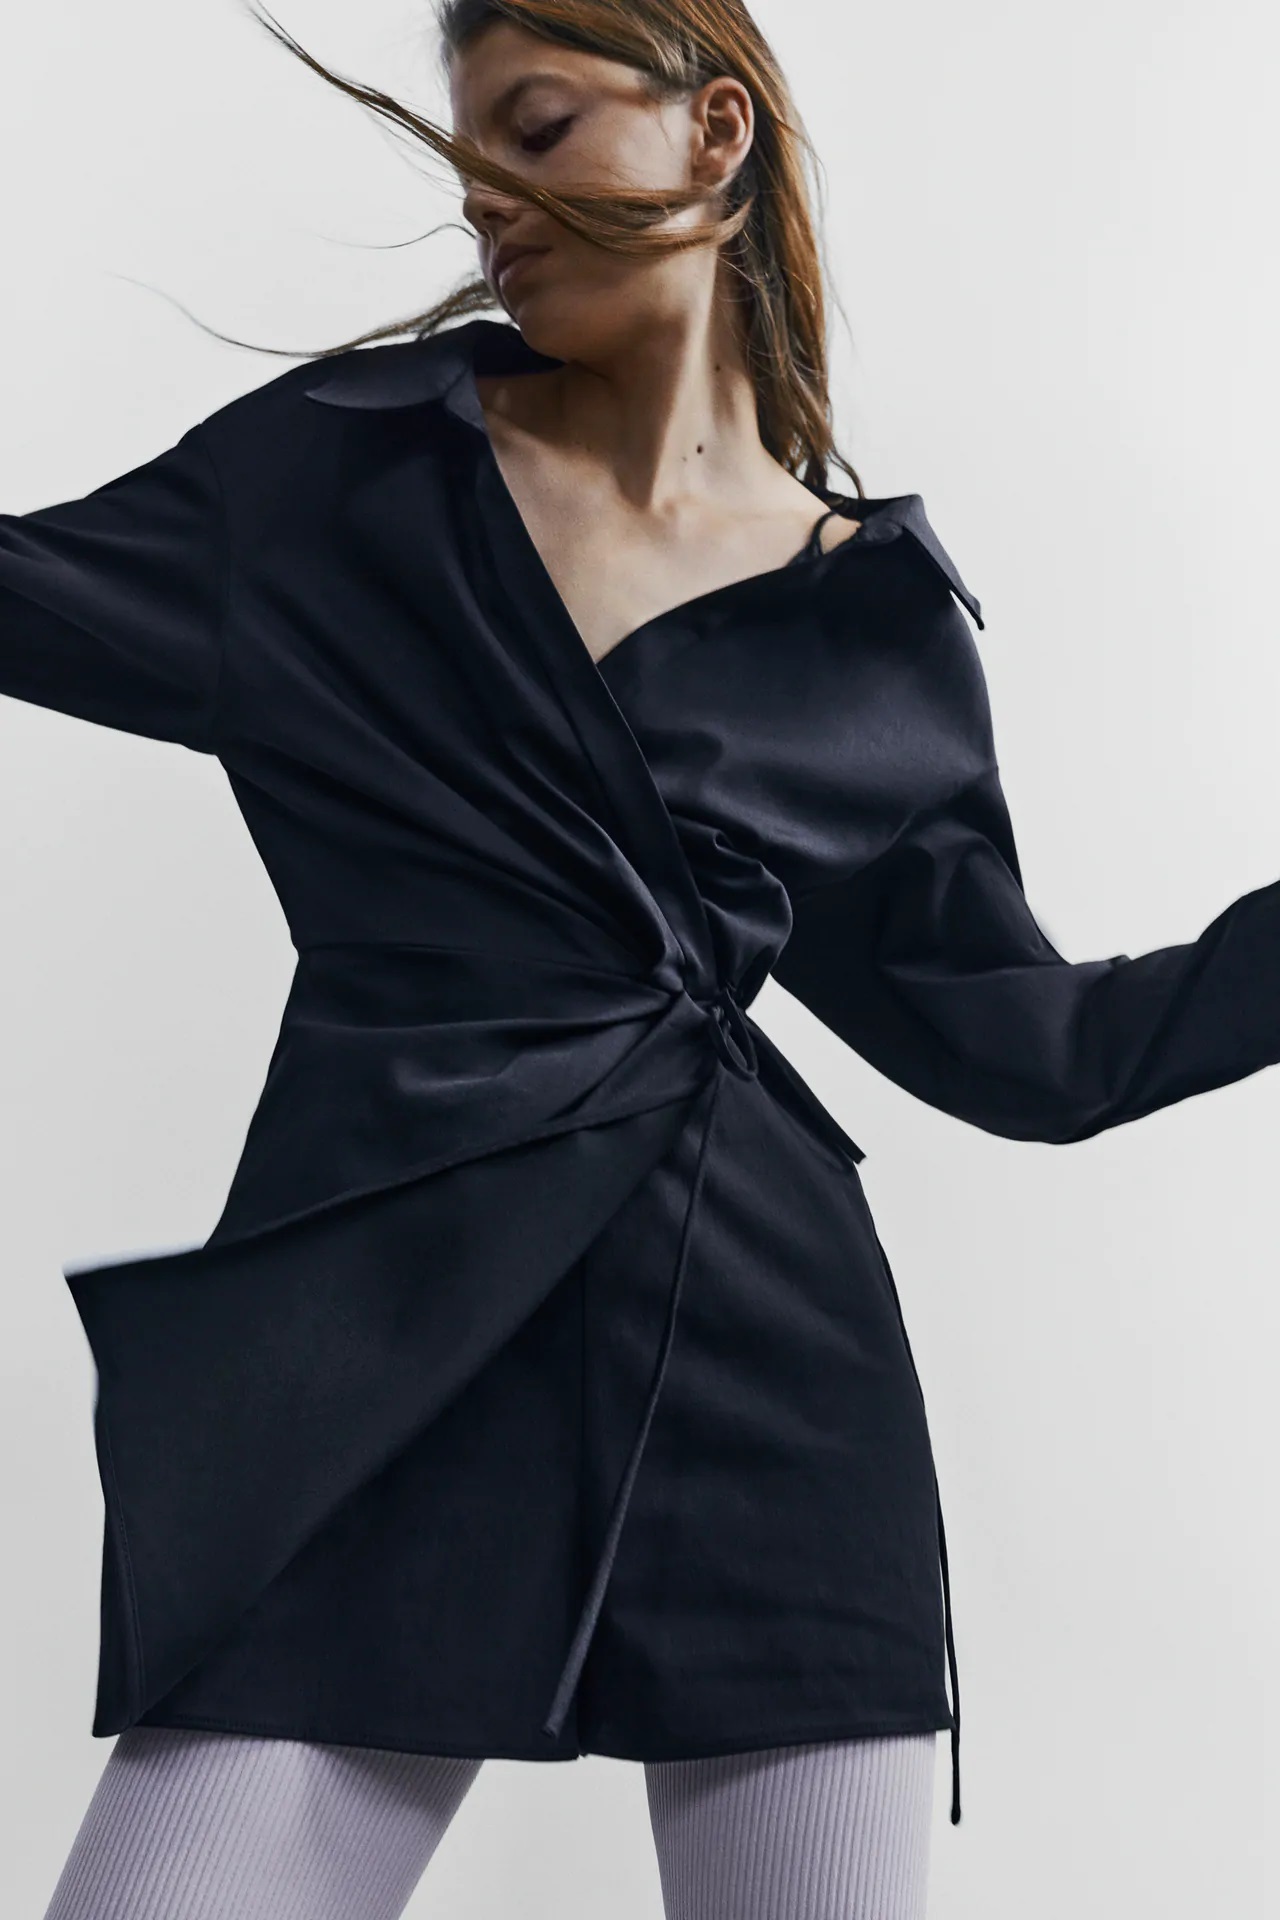 Este es el vestido de Zara que reúne las tendencias del otoño y te solucionará más de un look